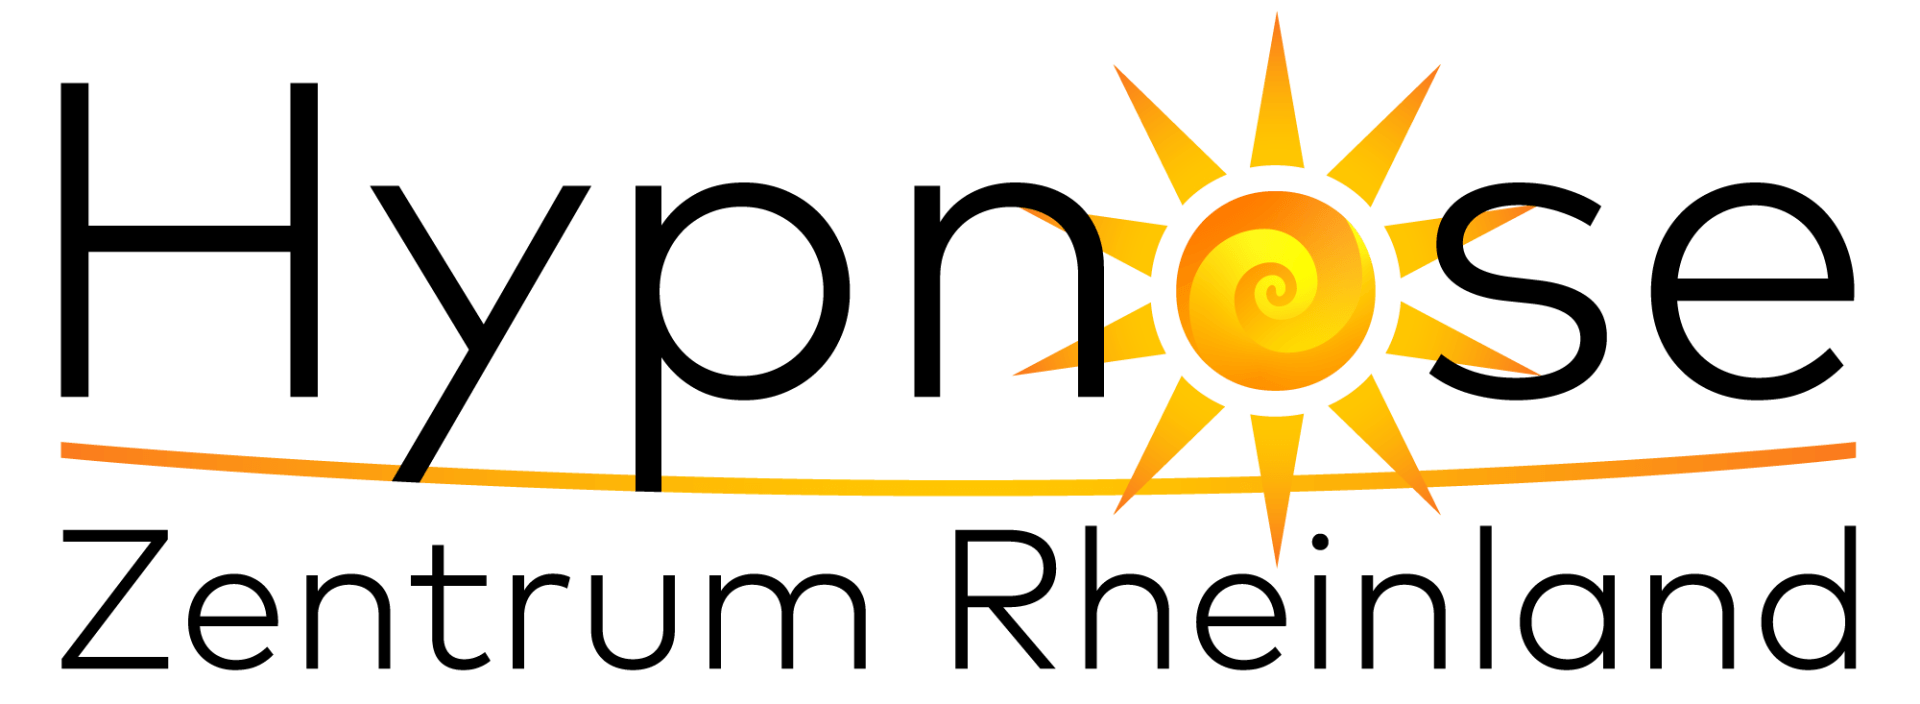 Hypnose Zentrum Rheinland Logo